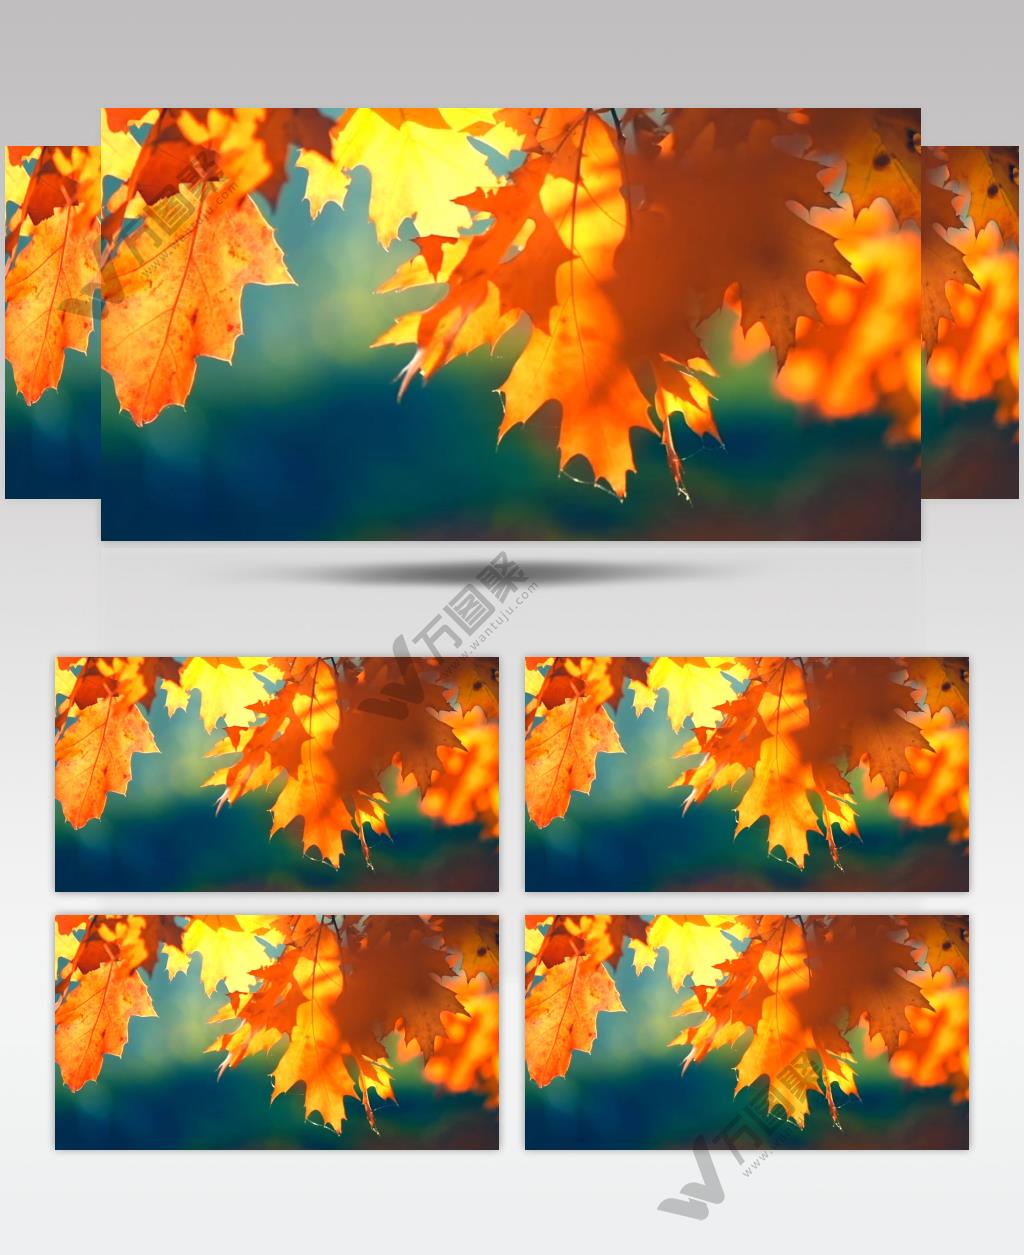 实拍秋天枫叶树影婆娑视频素材